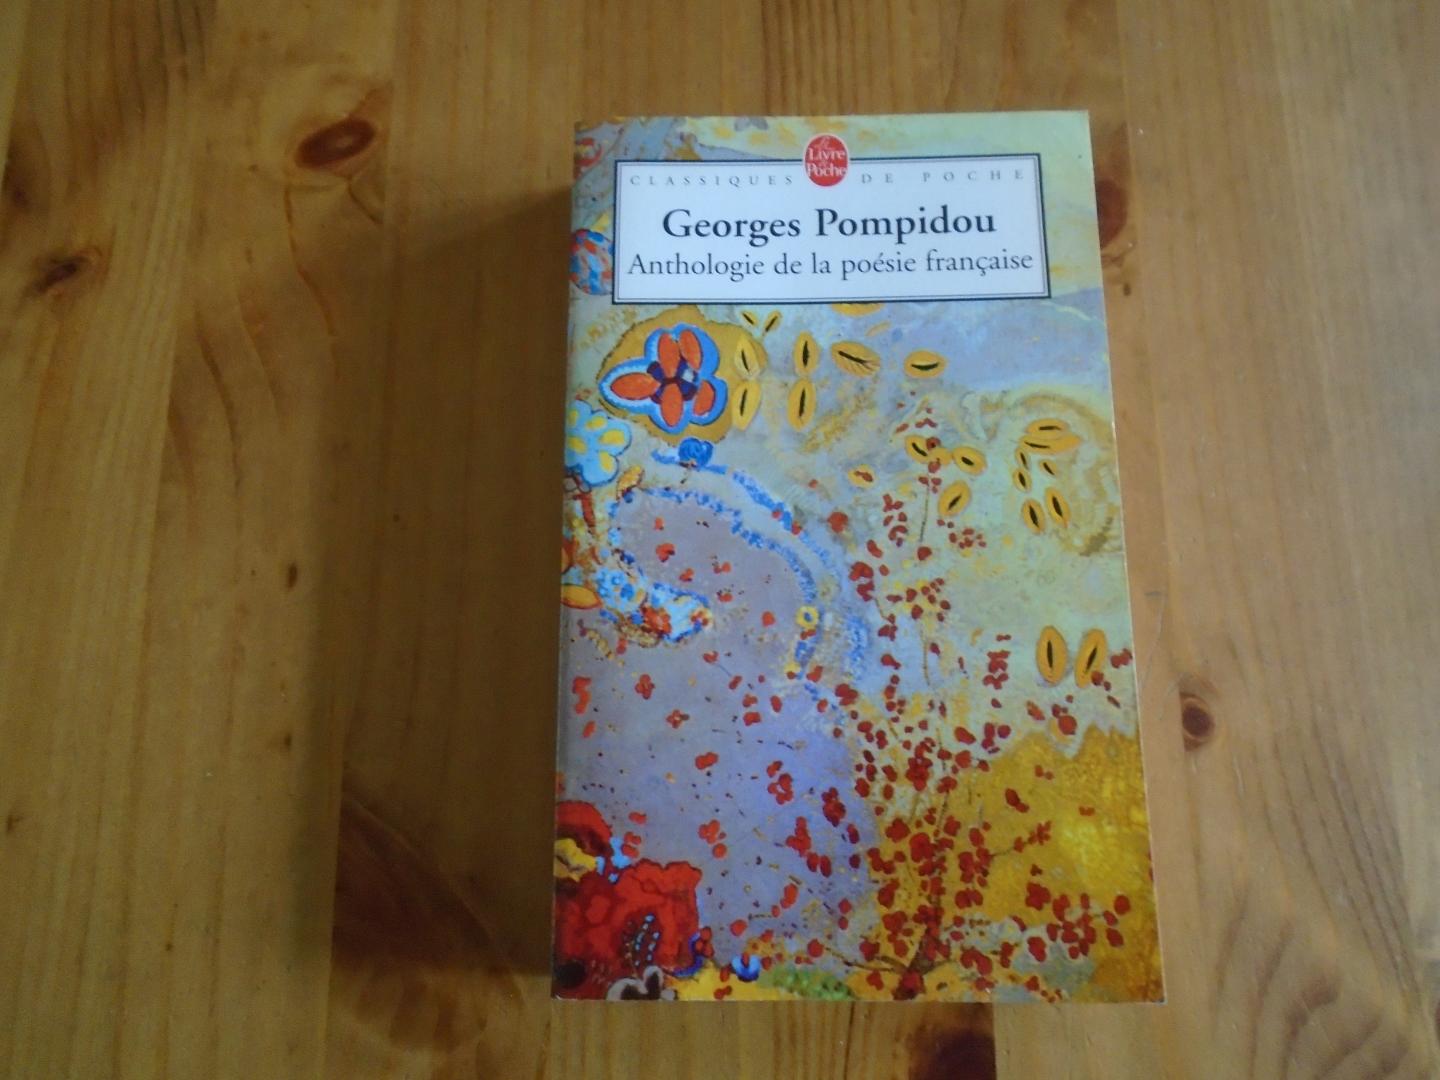 Pompidou, Georges - Anthologie de la poésie française